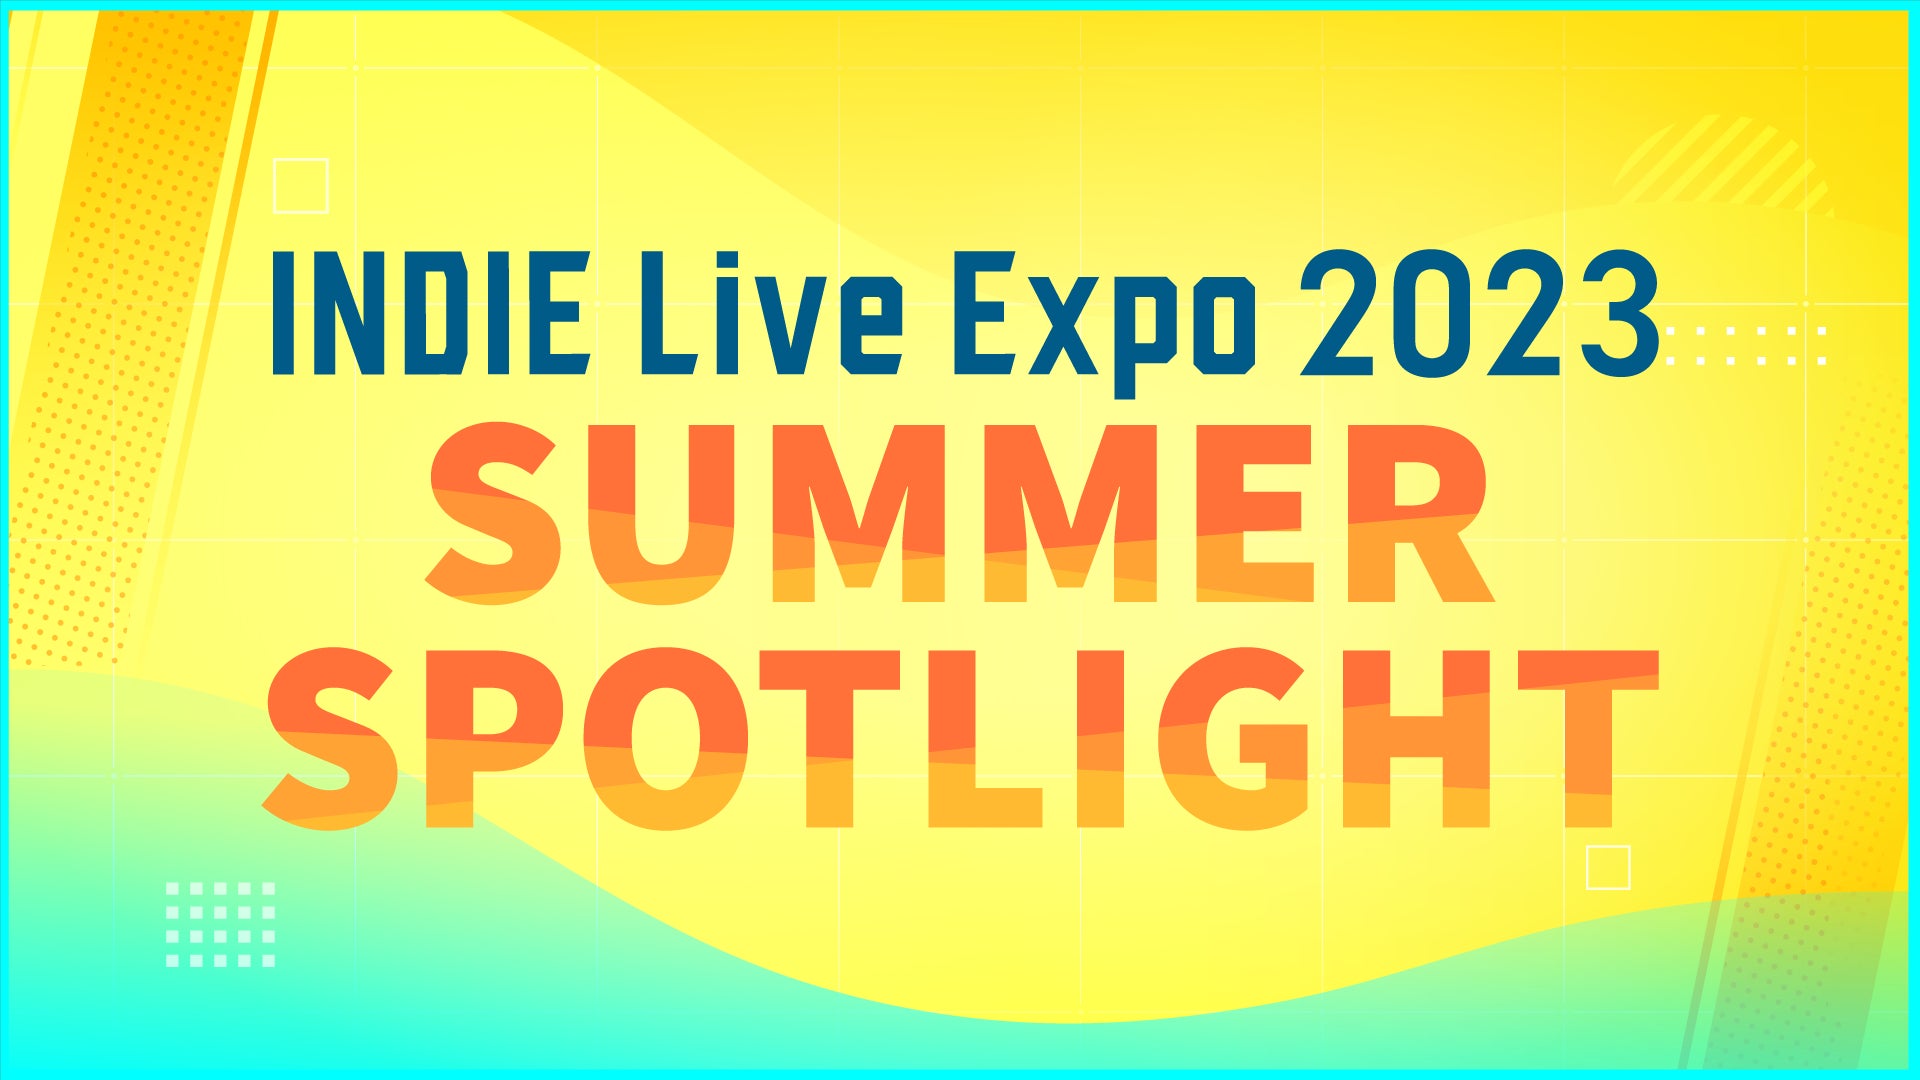 公式Discordでのイベントも開催決定！インディーゲーム紹介番組「INDIE Live Expo 2023 Summer Spotlight」ストリーマーショー出演者発表